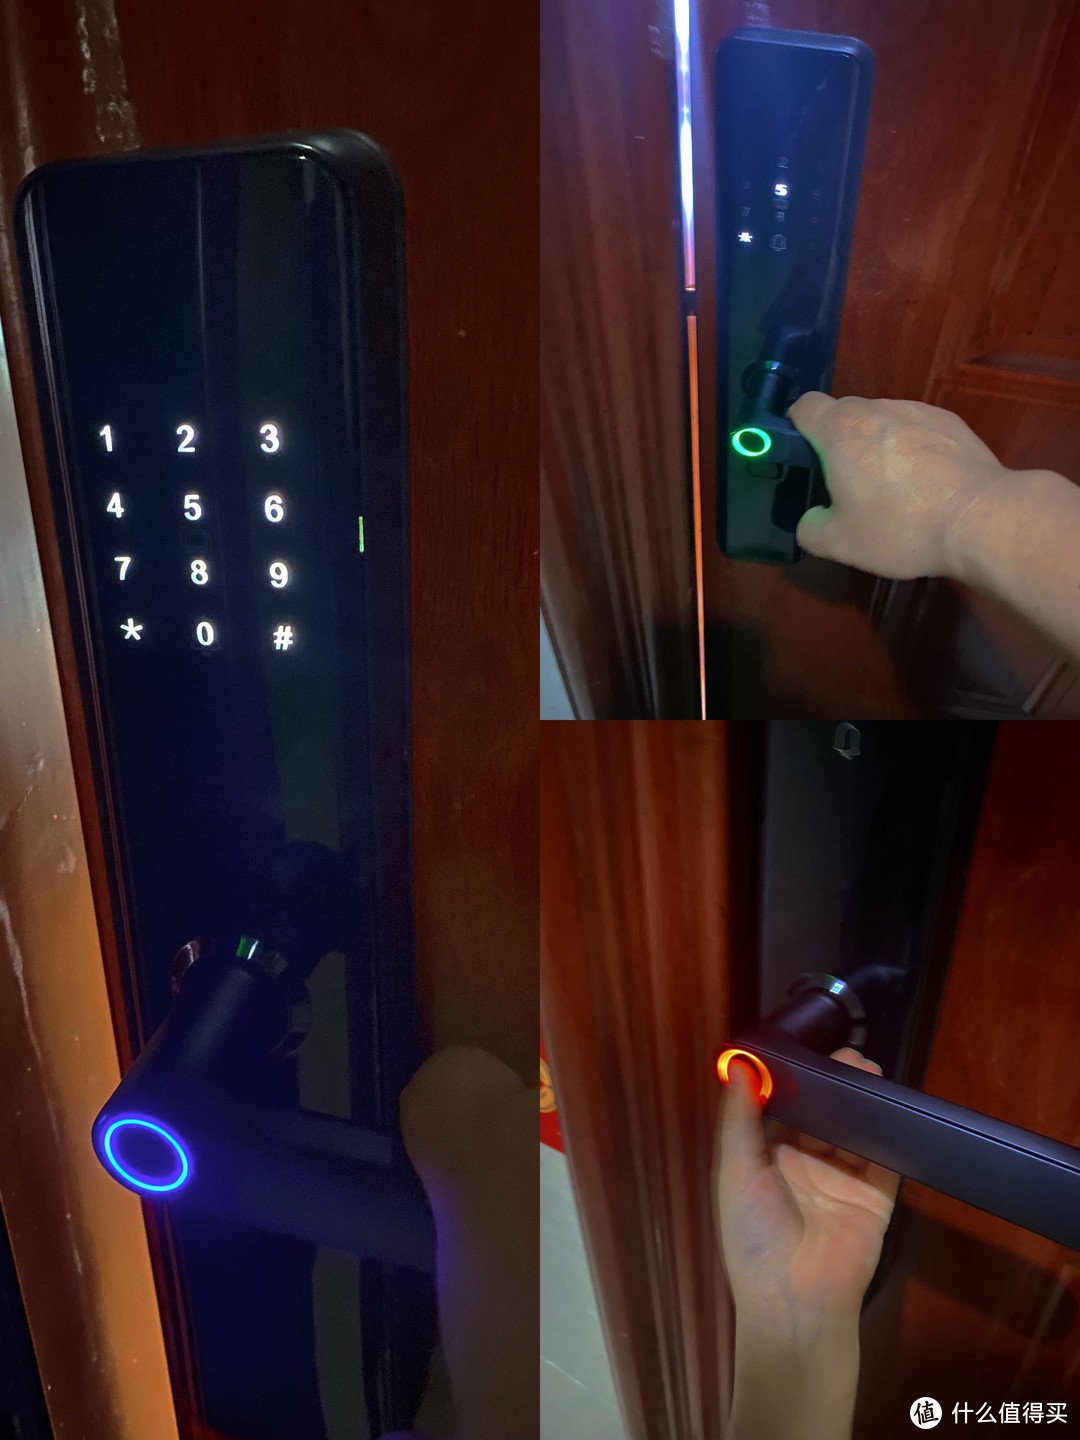 蓝灯激活，绿灯开锁，红灯指纹错误